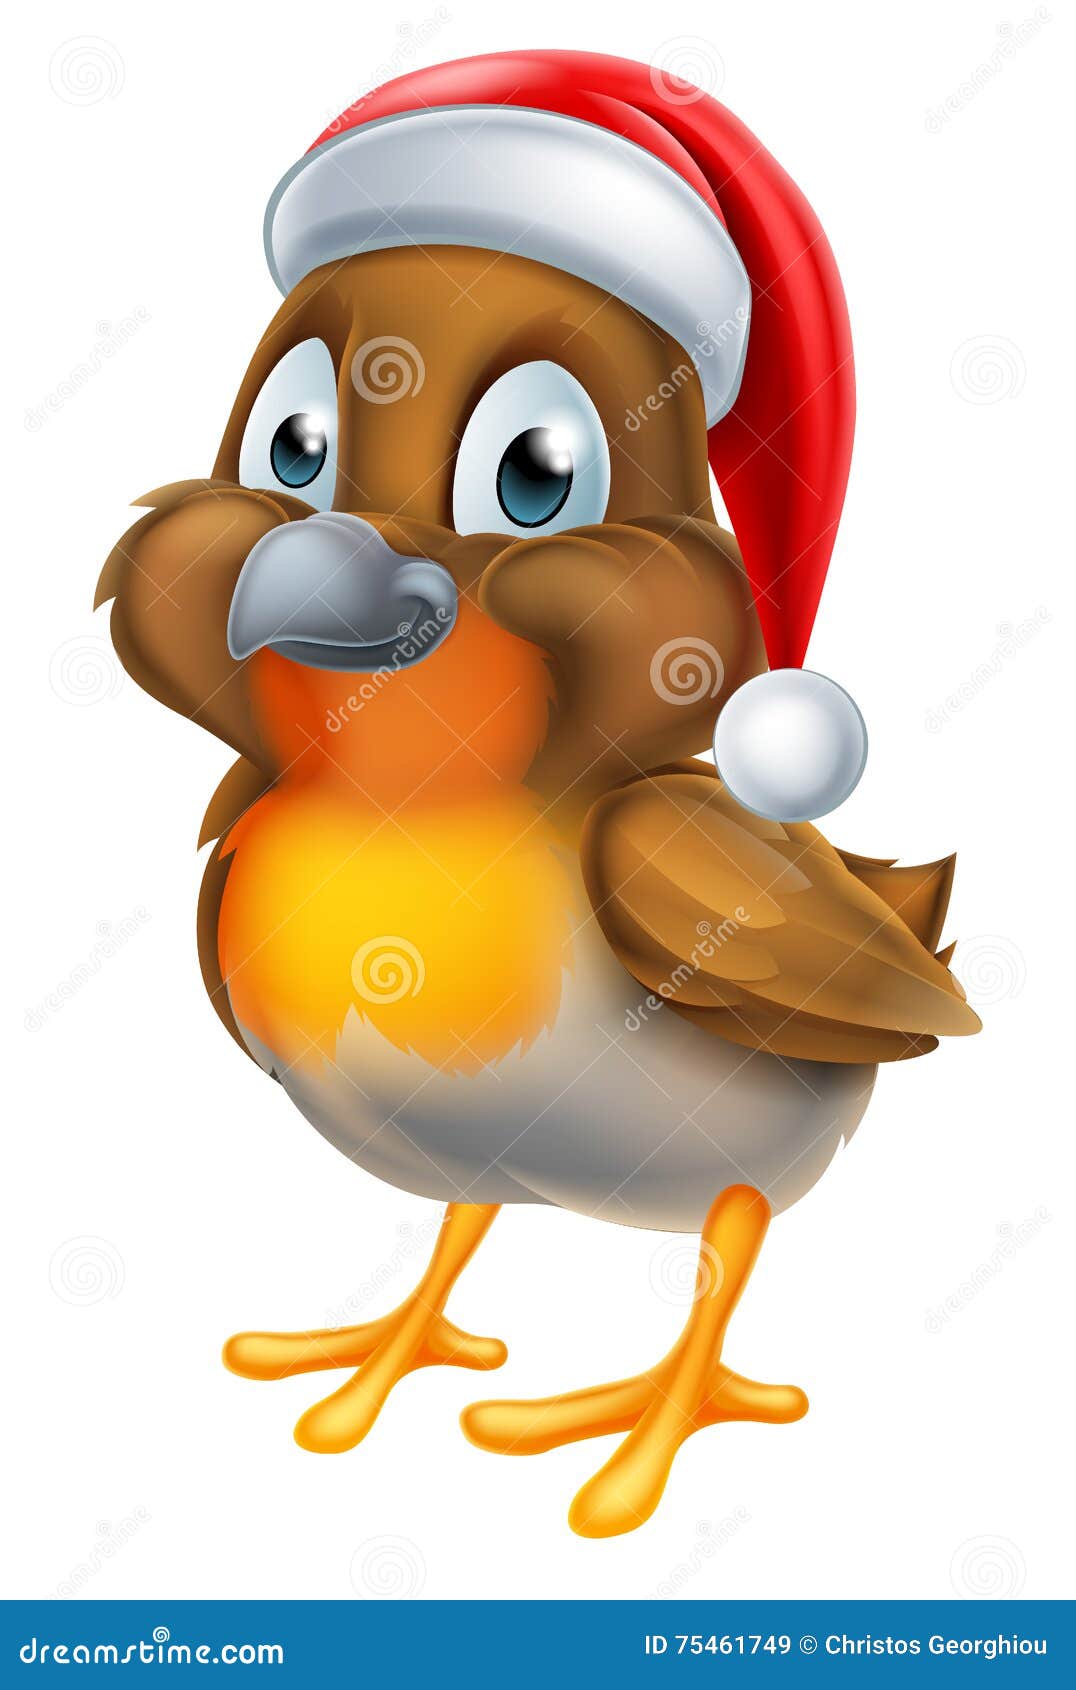 Robin Christmas Bird Cartoon. Ein Karikaturrotkehlchen Weihnachtsvogel, der einen Santa Claus-Hut trägt